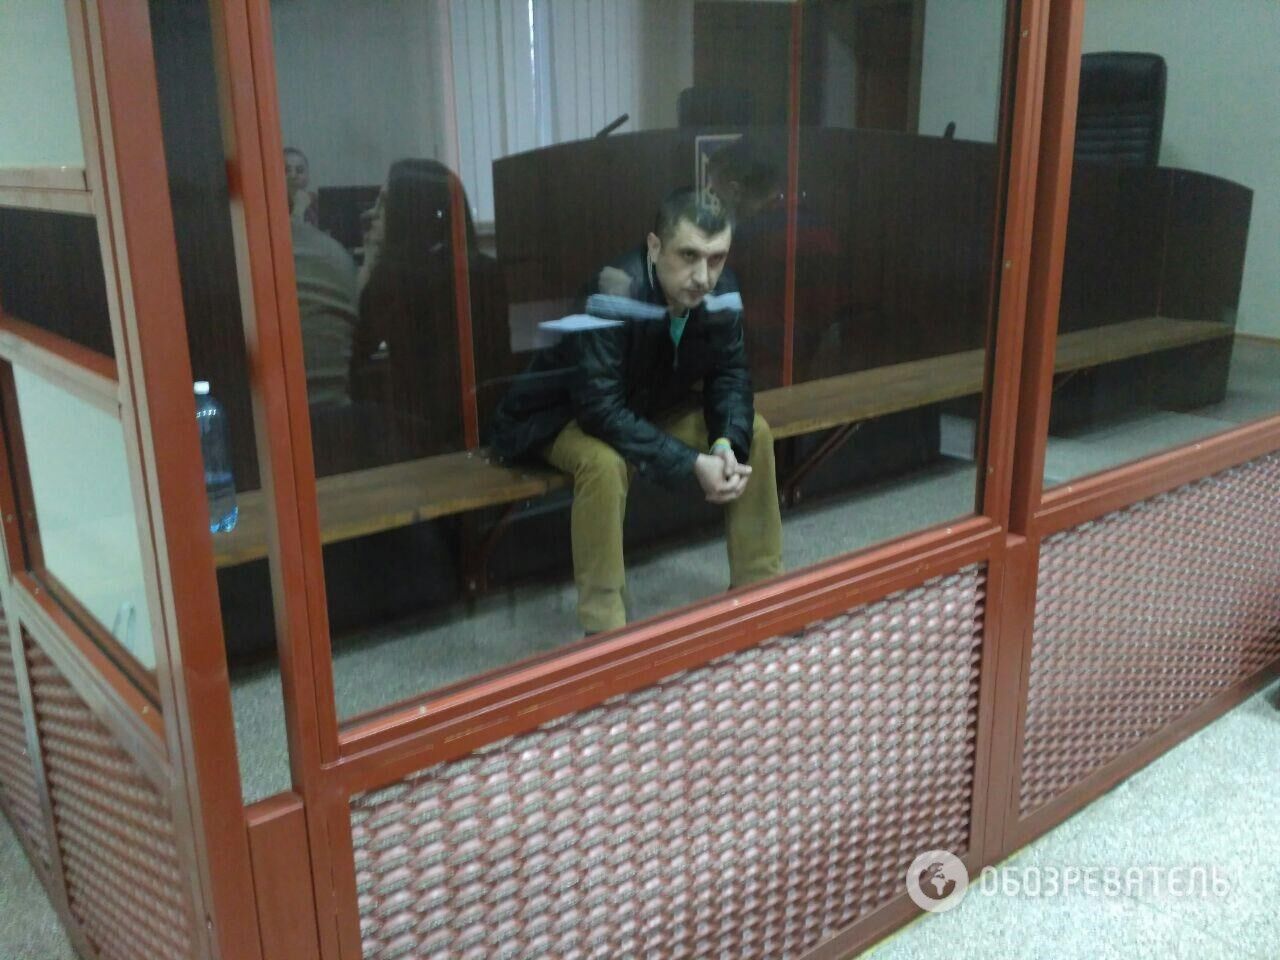 Дмитрий Россошанский во время судебного заседания 27 декабря